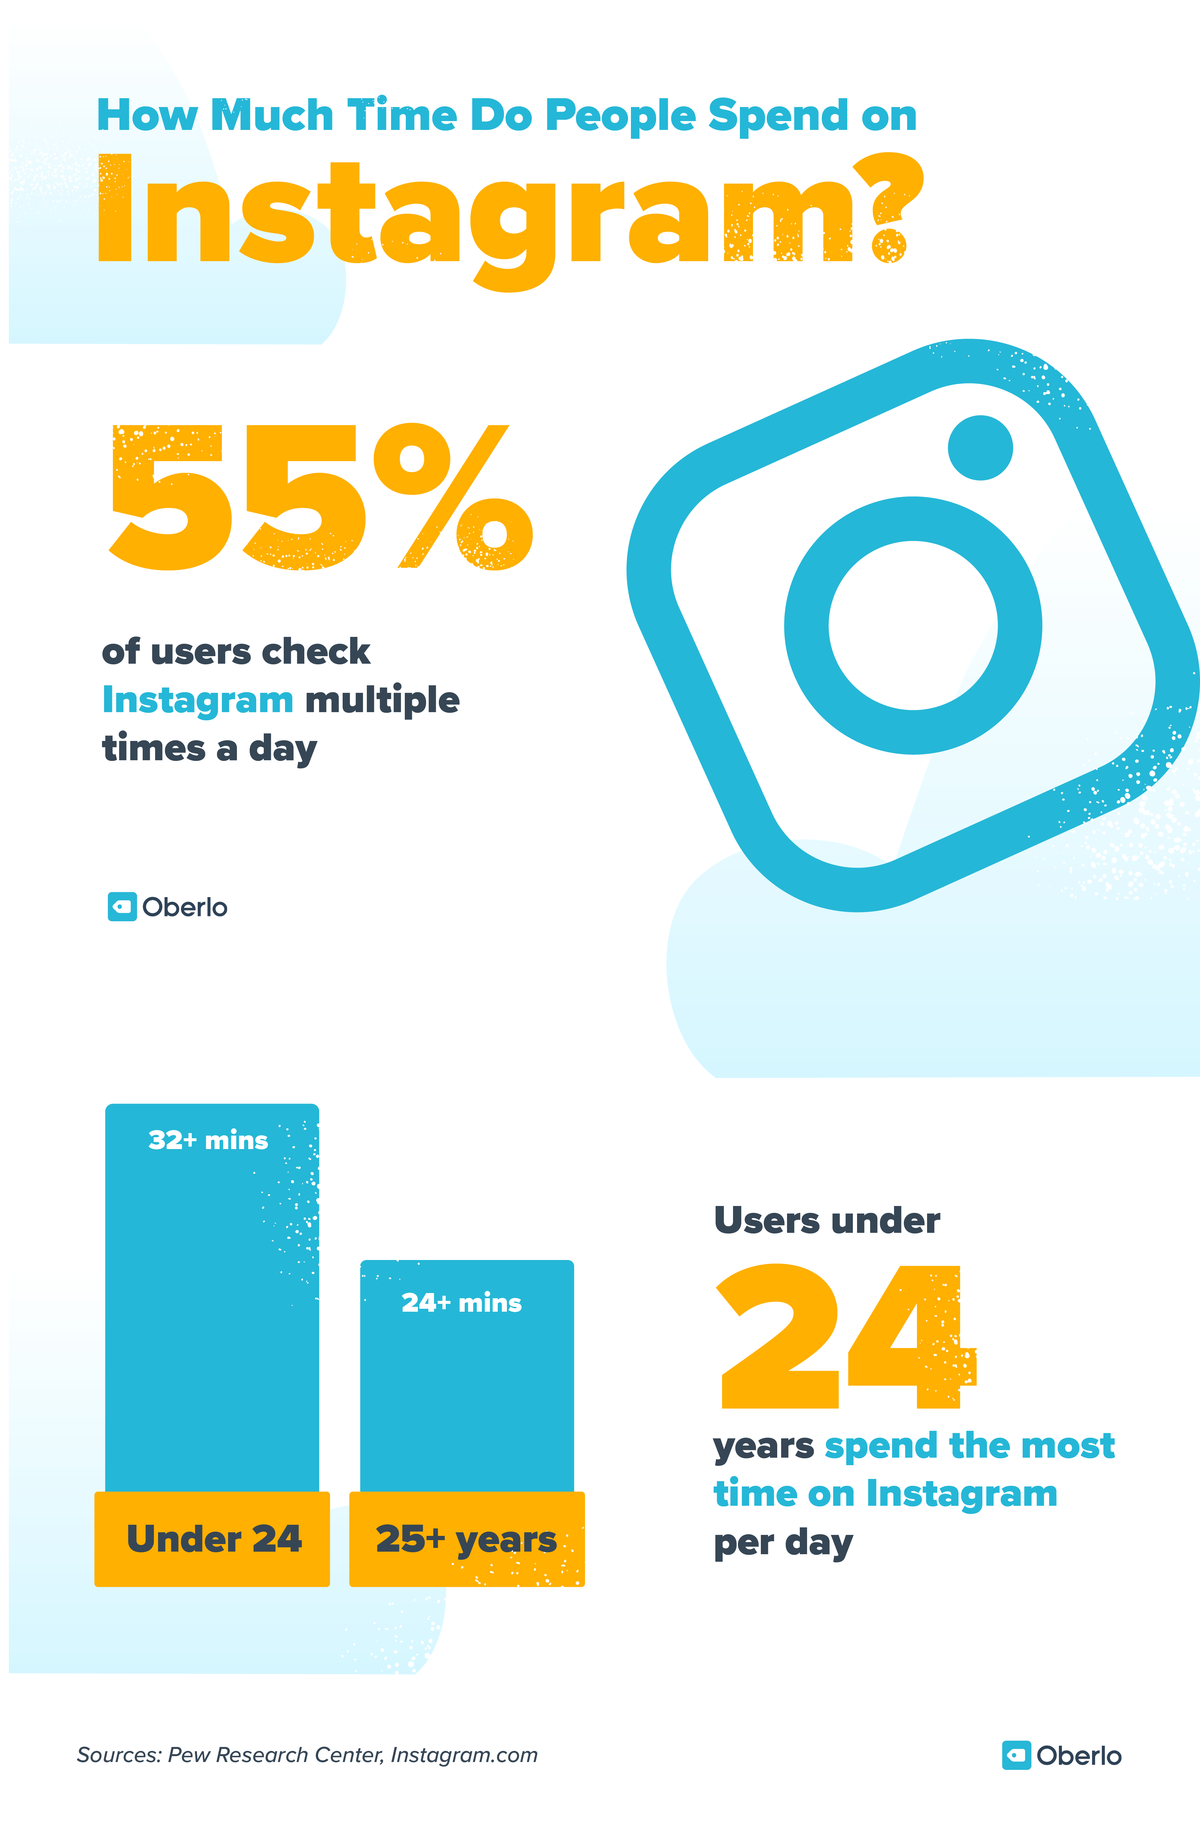 Статистика за маркетинга в социалните медии: 55% от потребителите на instagram го проверяват по няколко пъти на ден. Потребителите под 24 години прекарват най-много време в Instagram на ден (повече от 32 минути)